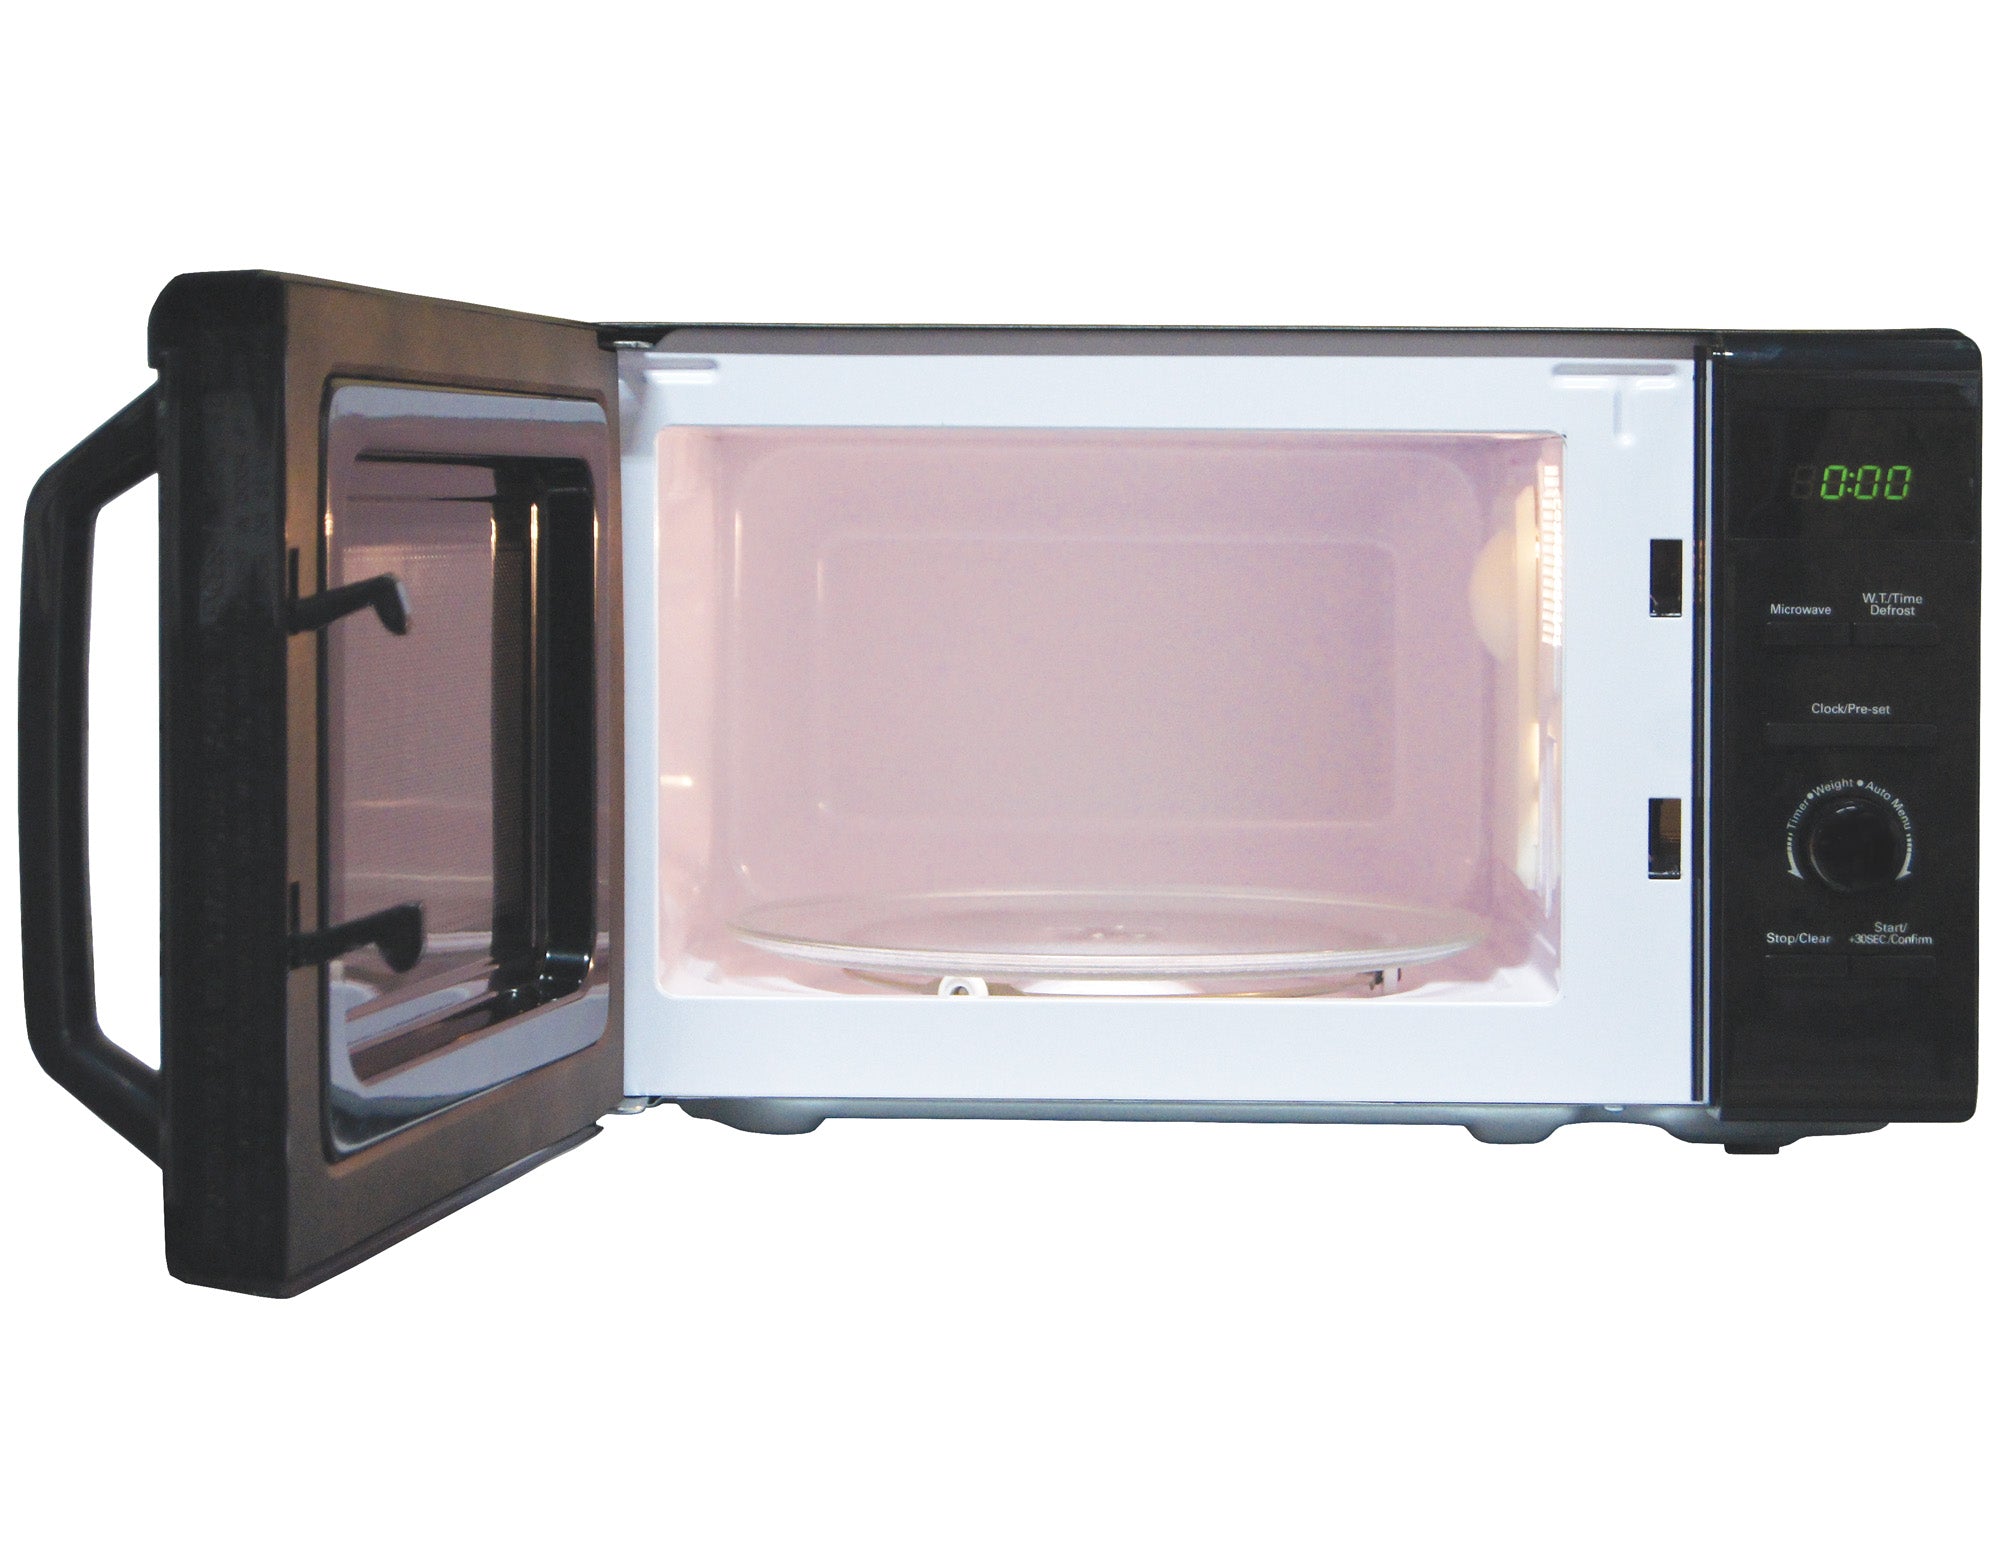 Digital Microwave, 20 Litre, 8 Cooking Settings, 800W, Black